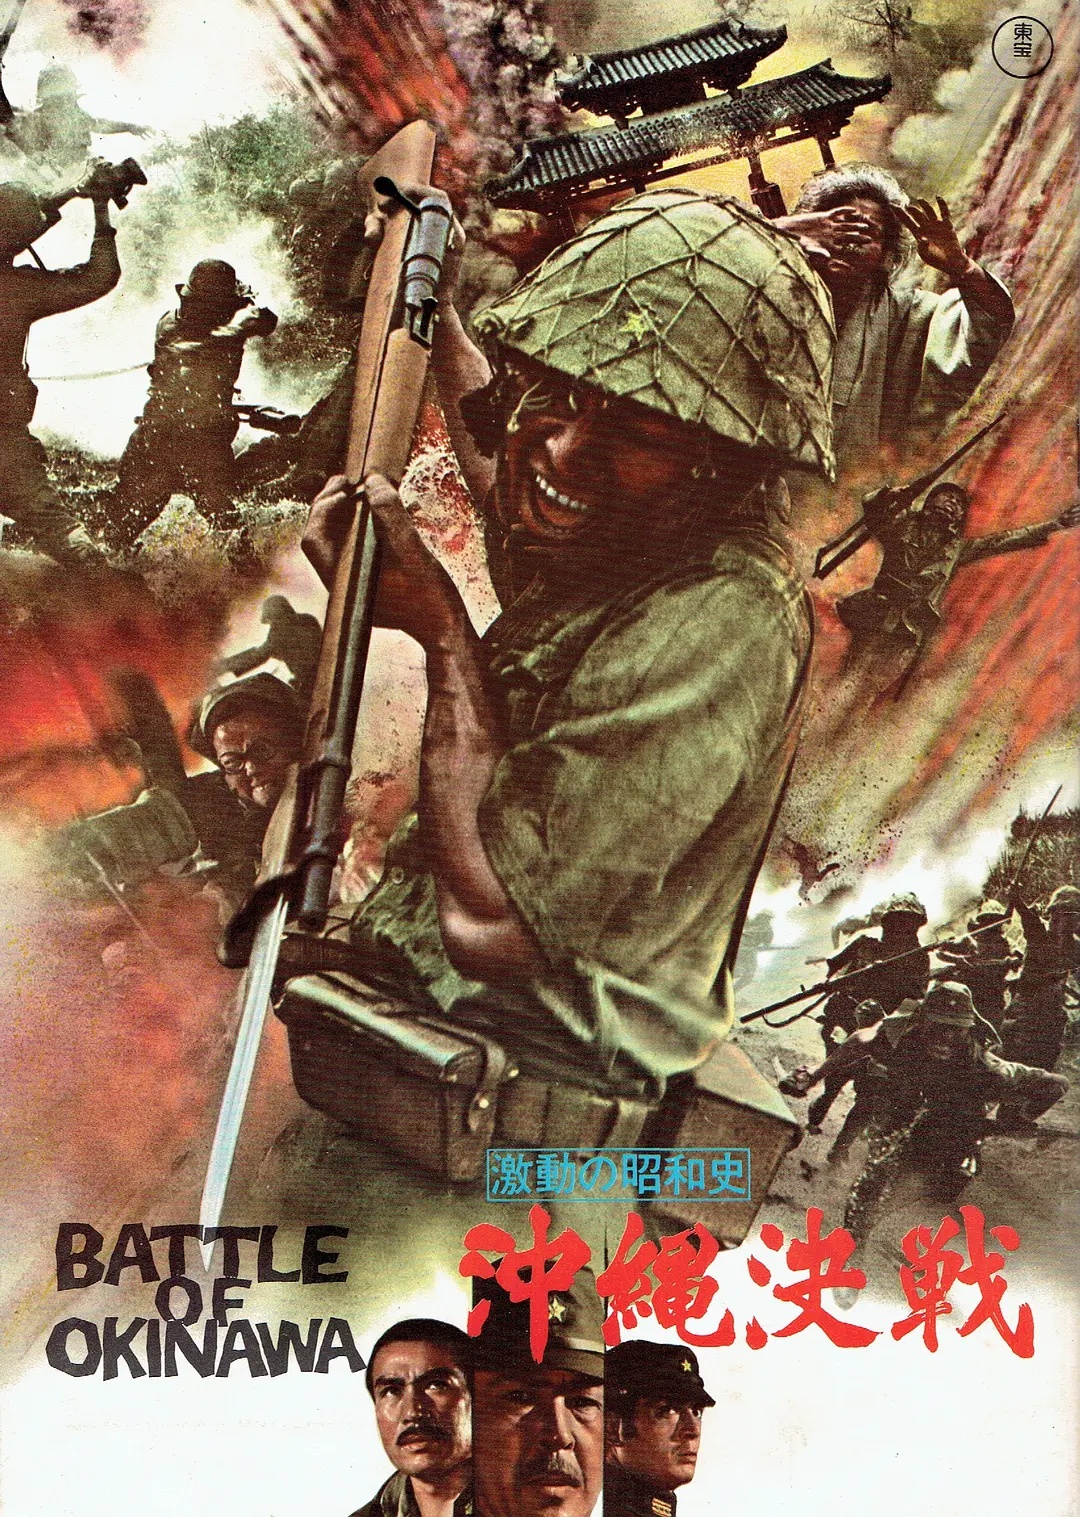 冲绳岛战役电影叫什么?分享日本拍的二战经典大片《血战冲绳岛》